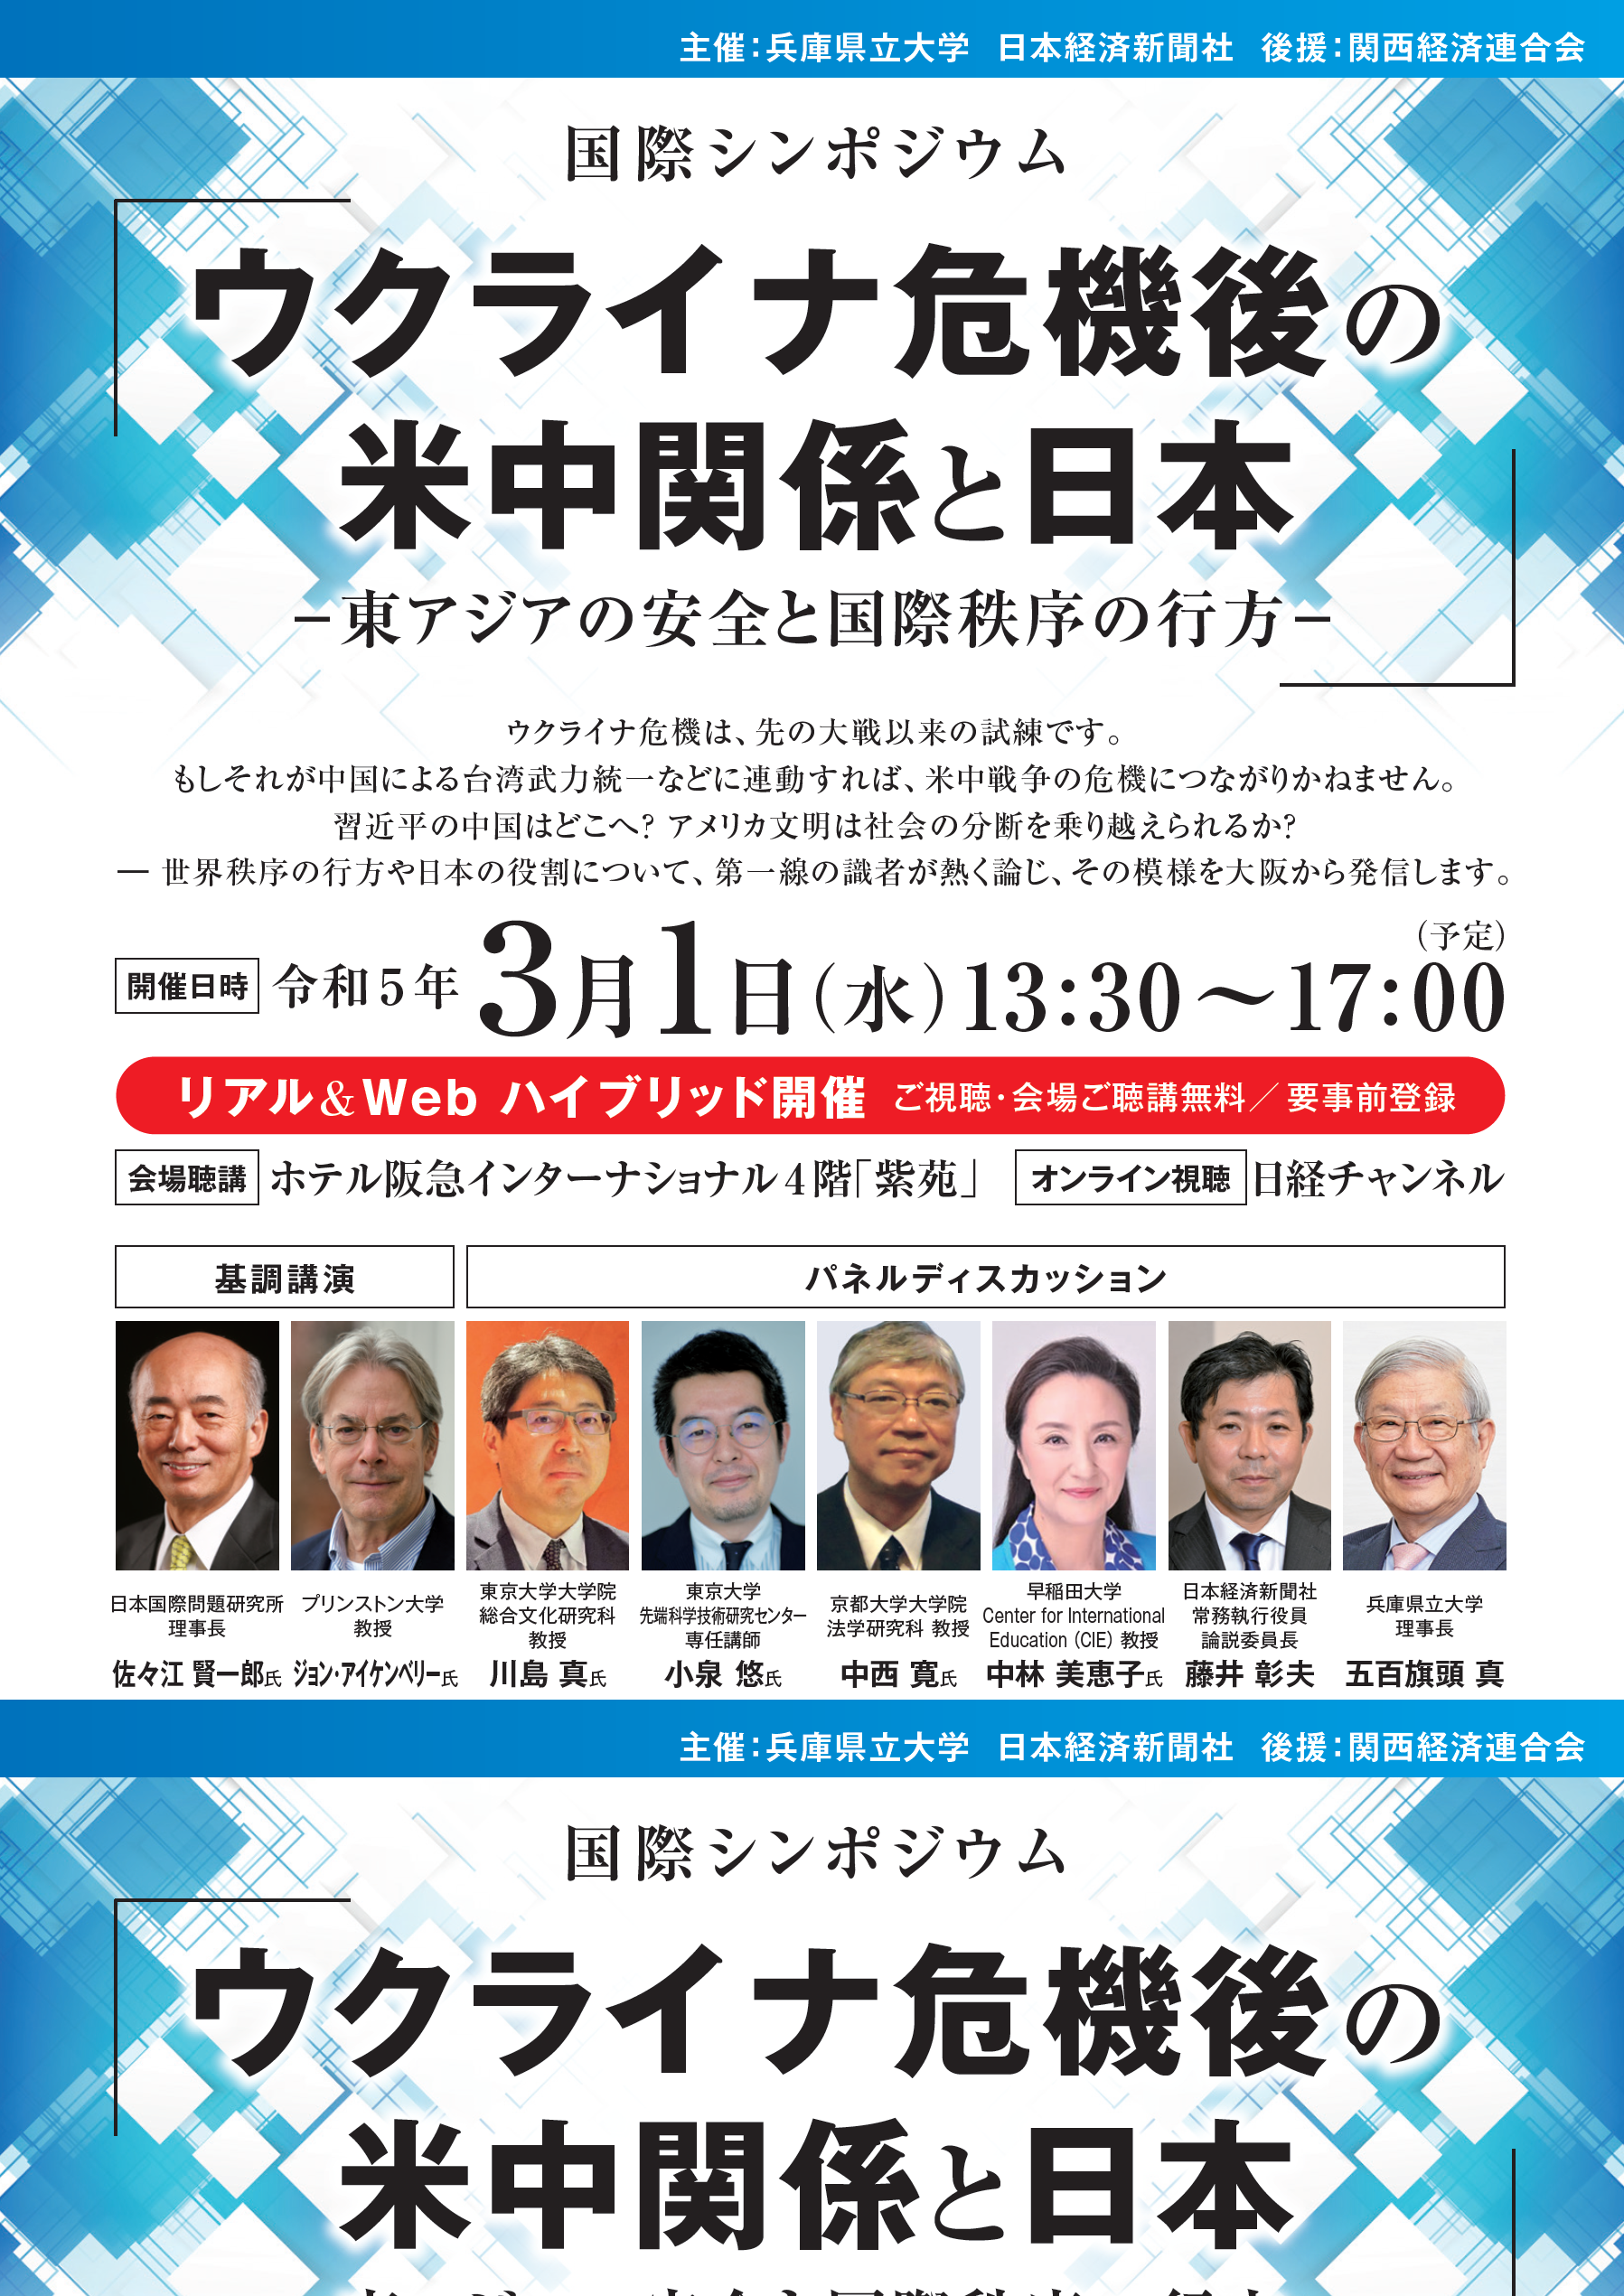 兵庫県立大学が3月1日に国際シンポジウム「ウクライナ危機後の米中関係と日本 -- 東アジアの安全と国際秩序の行方--」を開催 -- 世界秩序の行方や日本の役割について、関西から日本全国・世界へ向けて発信